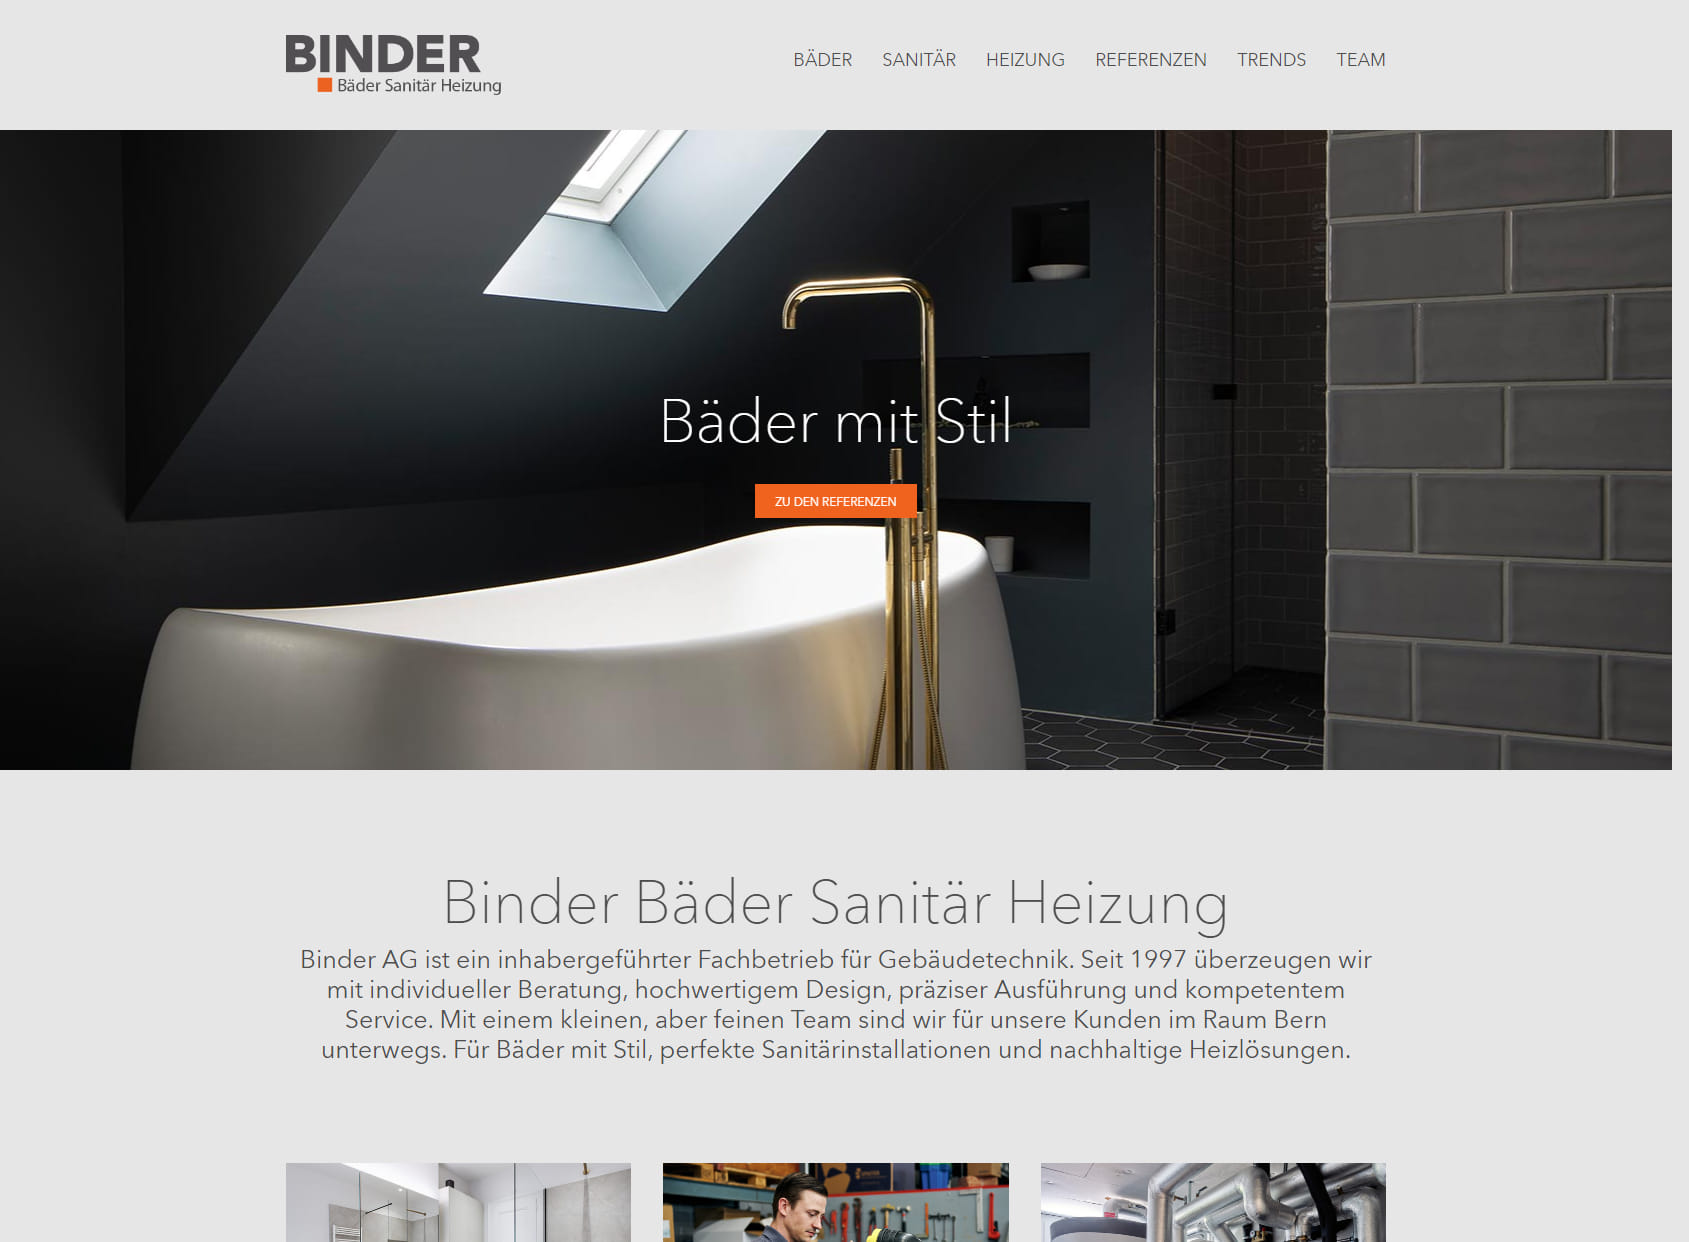 Binder AG, Bäder Sanitär Heizung